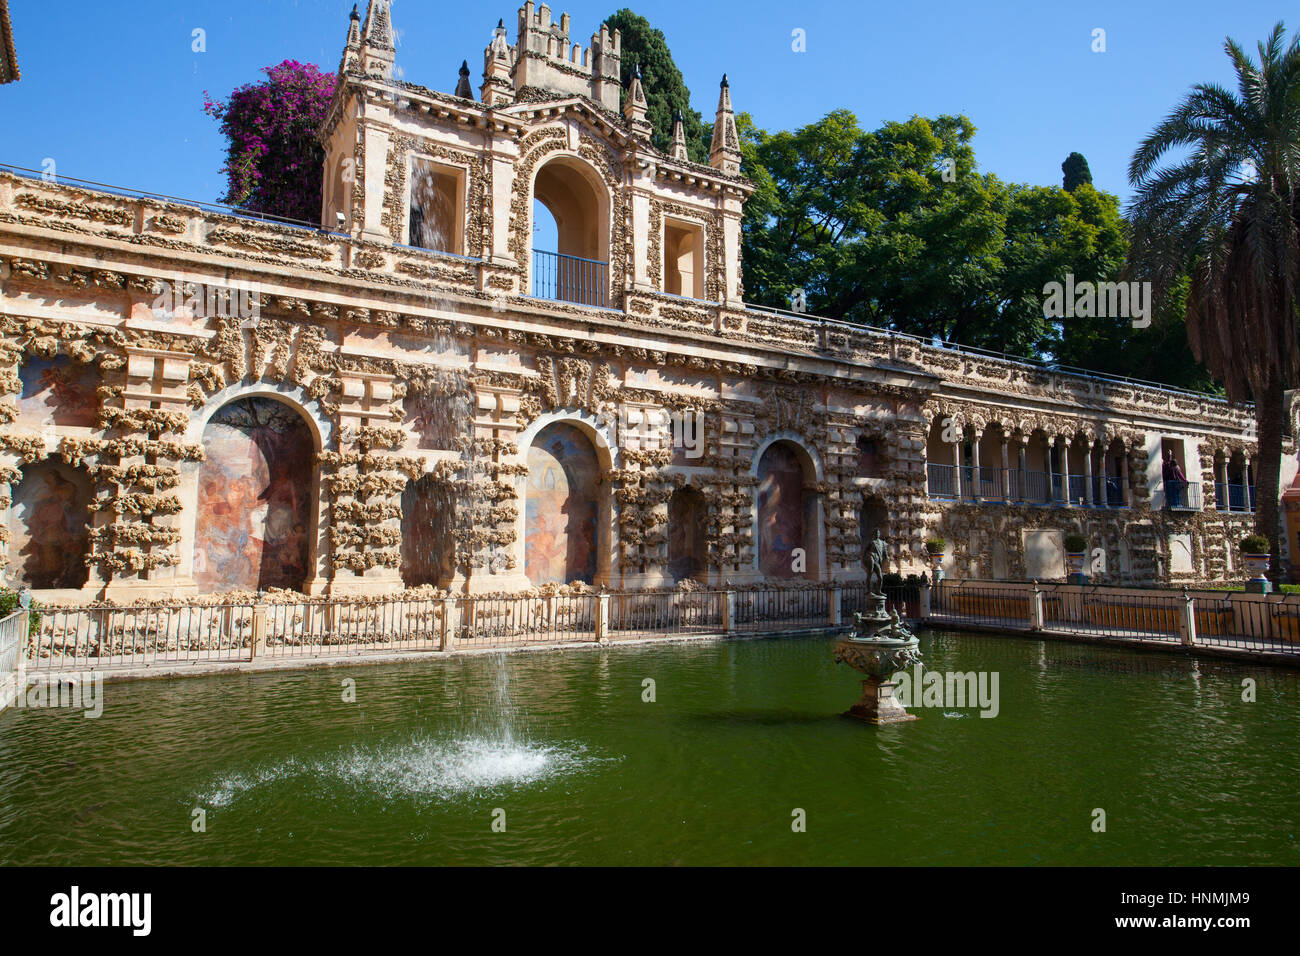 Séville, Espagne - novembre 18,2016 : Alcazar de Séville dans les jardins.L'Alcazar de Séville est un palais royal à Séville, Espagne, initialement développé par Banque D'Images